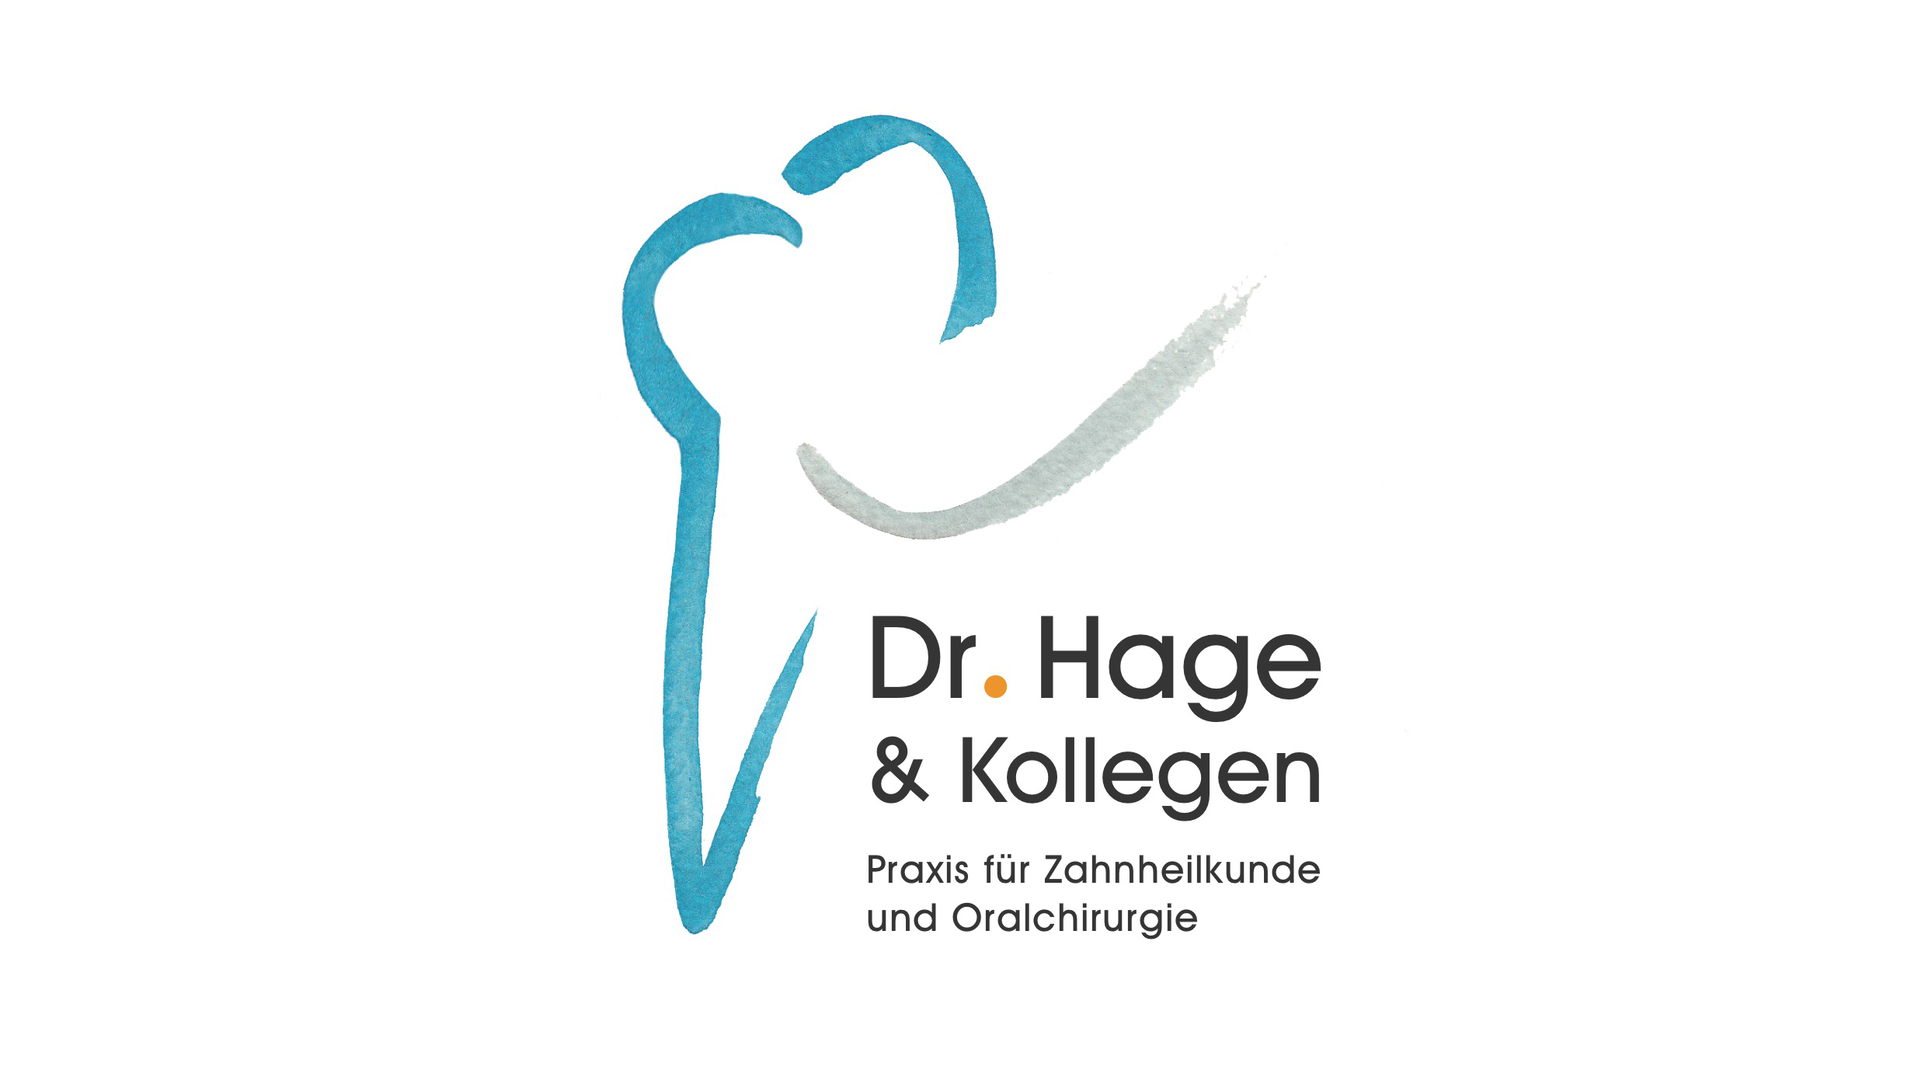 Dr. Hage & Kollegen